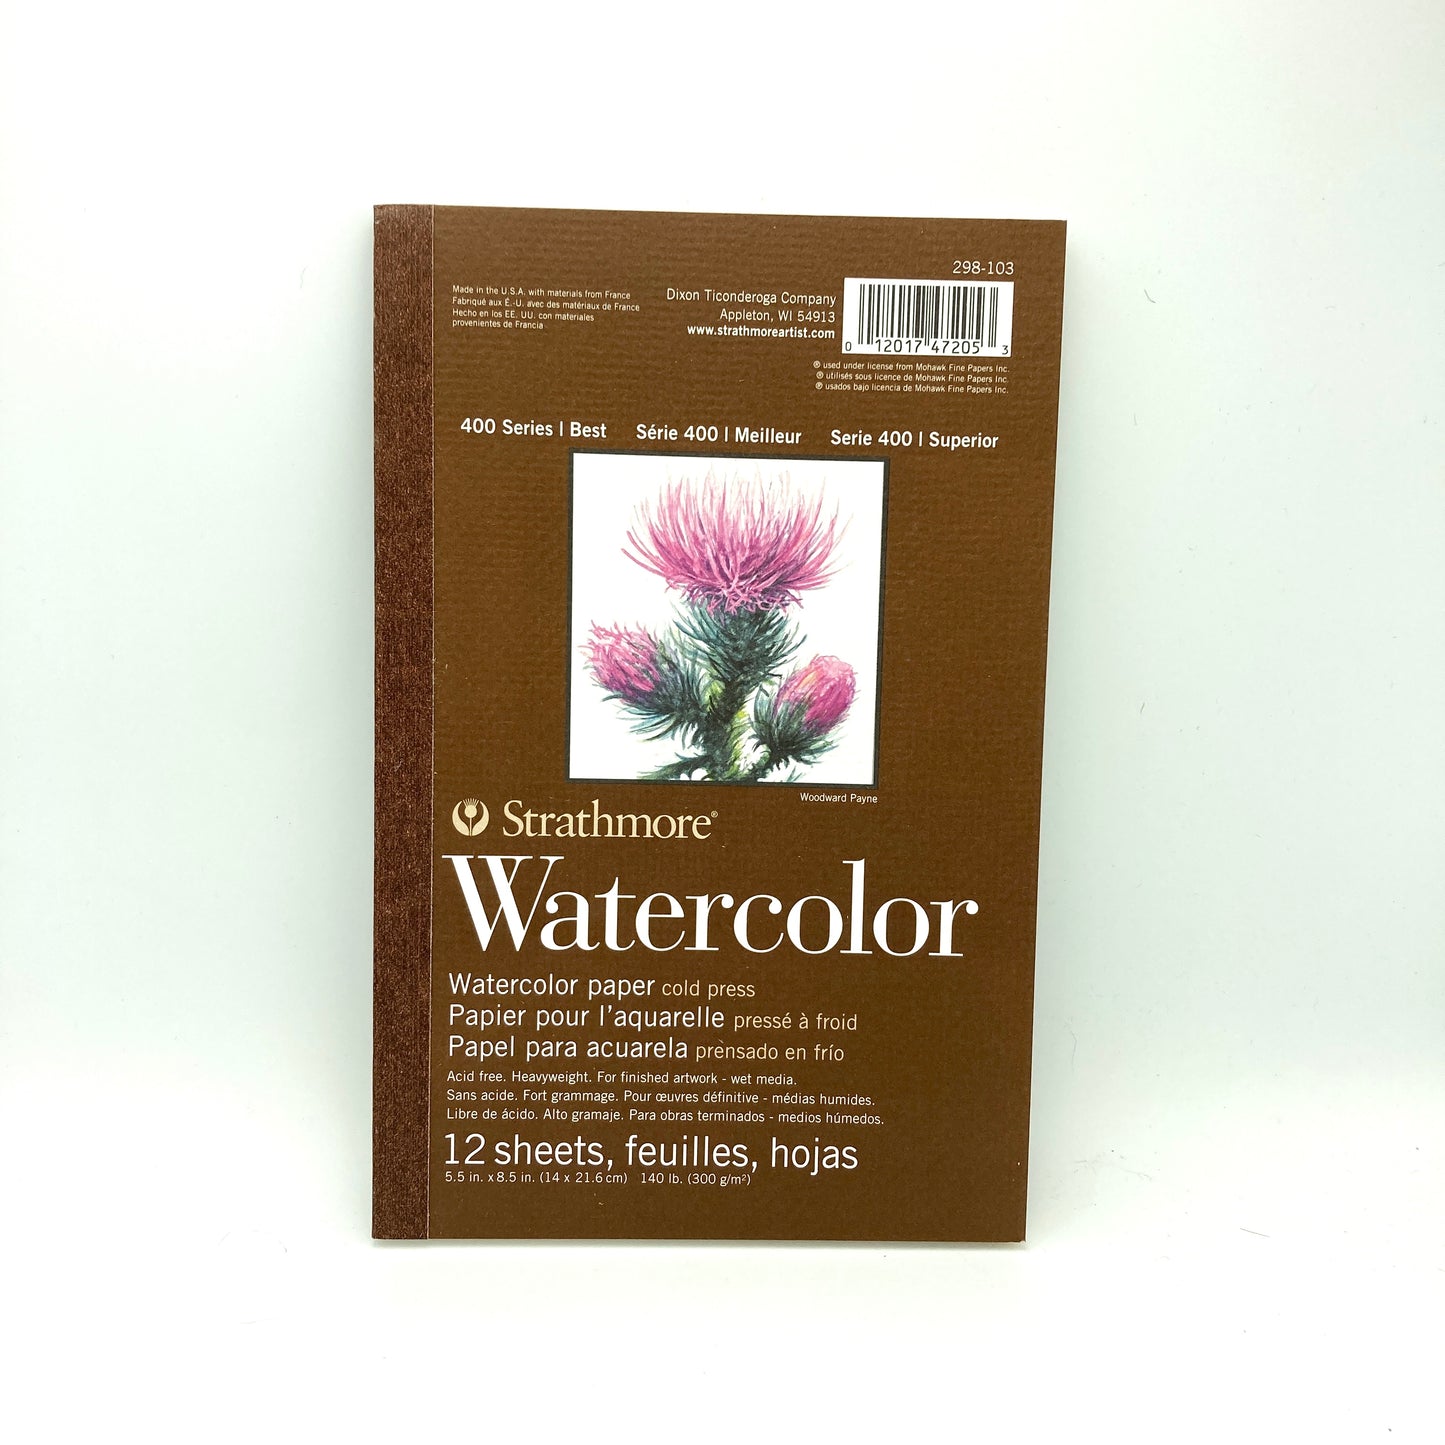 Starter Watercolor kit